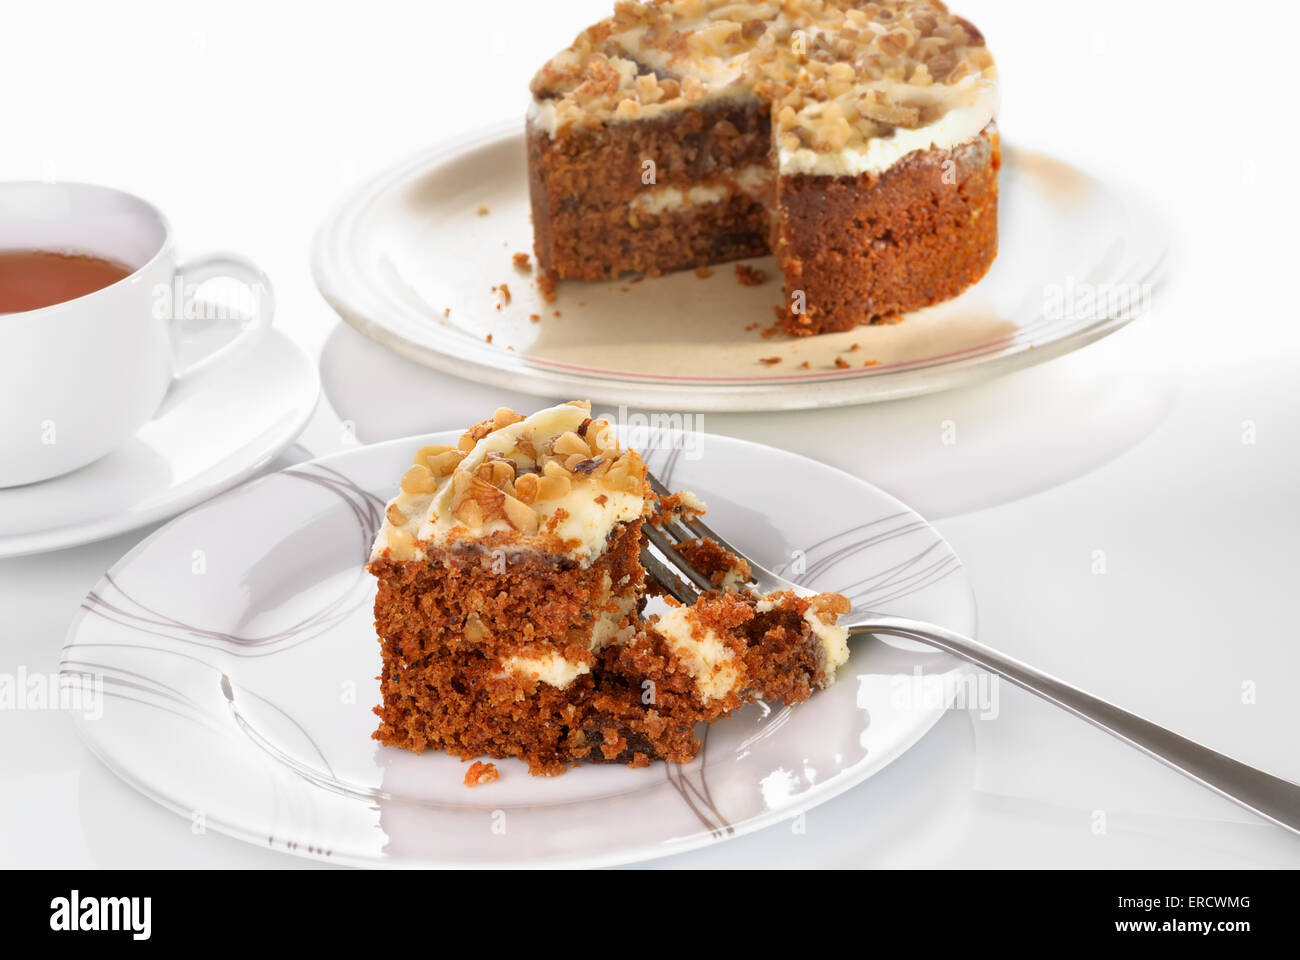 Karotte-Kuchen-Slice serviert auf einem Teller mit Gabel auf einer weißen Fläche. Tasse Tee. Selektiven Fokus Stockfoto